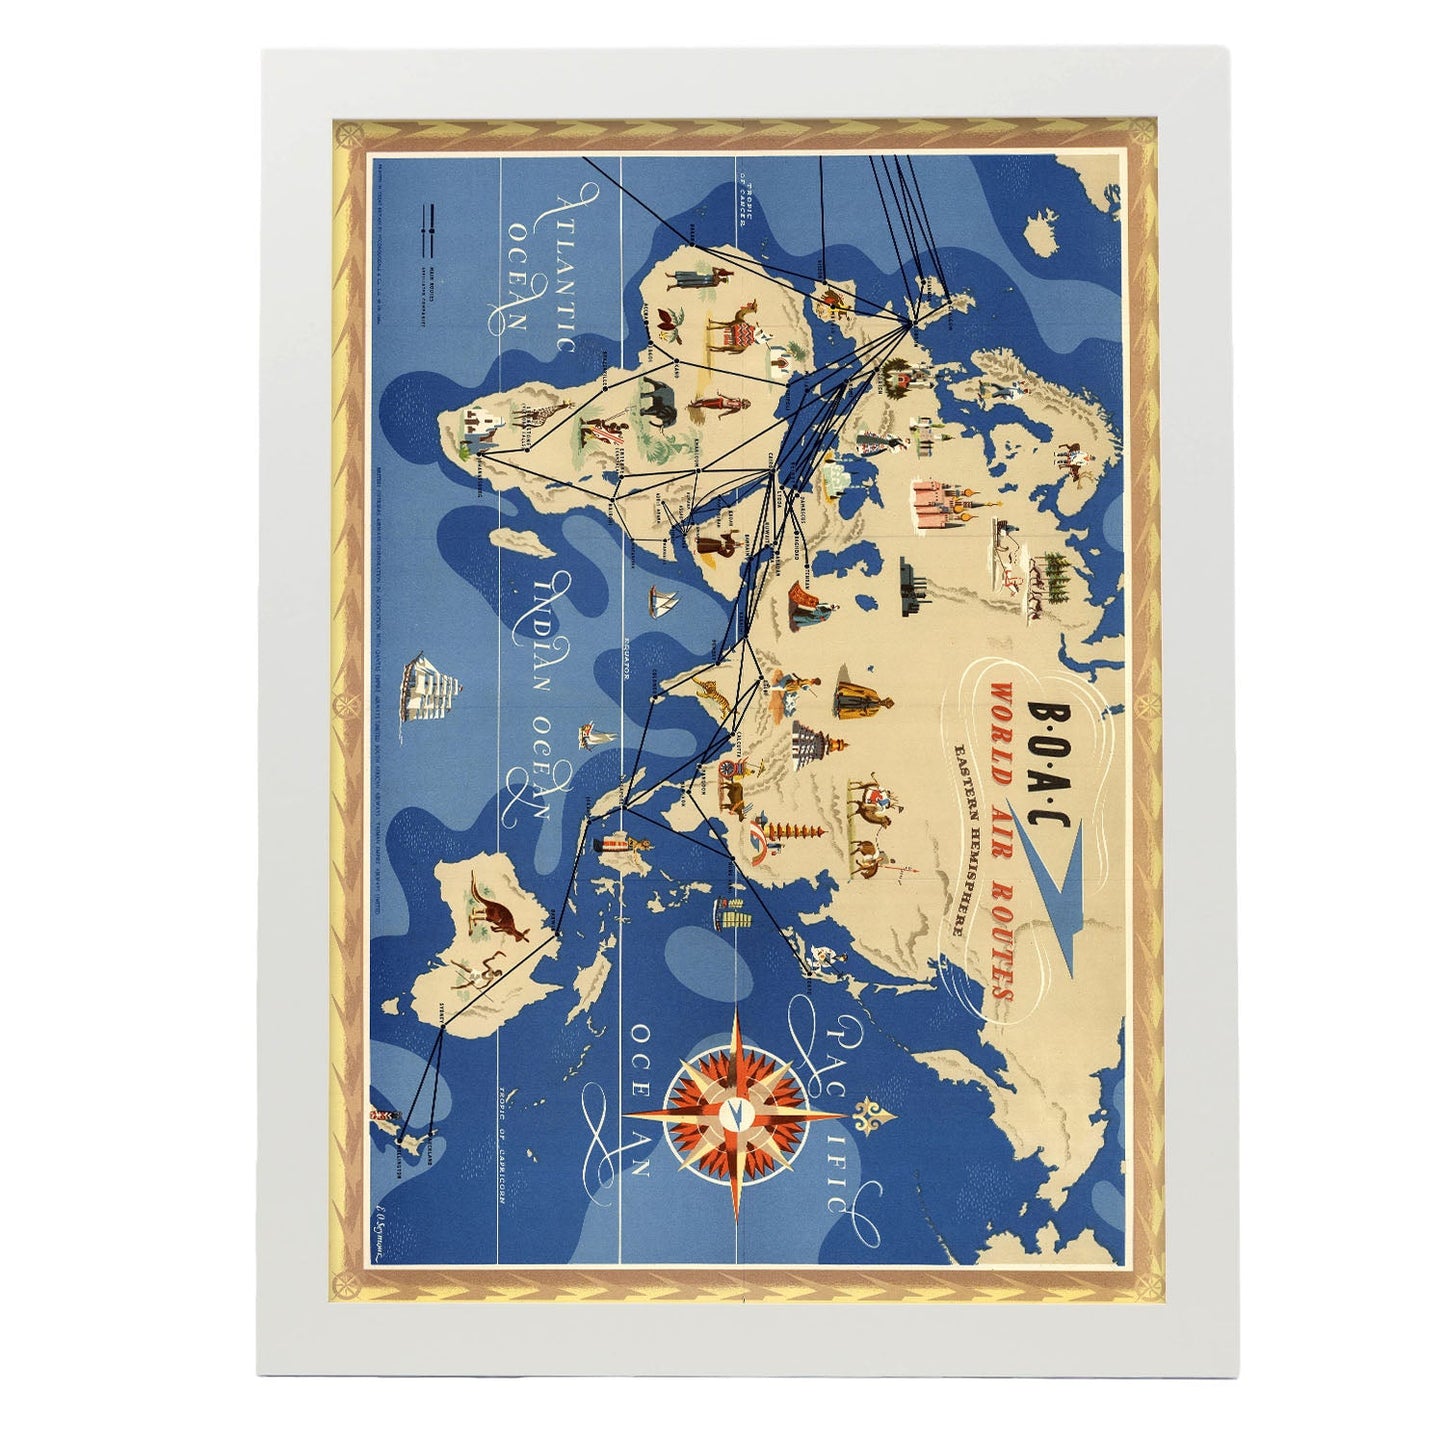 BOAC-World-route-map-Eastern-Hemisphere-Artwork-Nacnic-A3-Marco Blanco-Nacnic Estudio SL